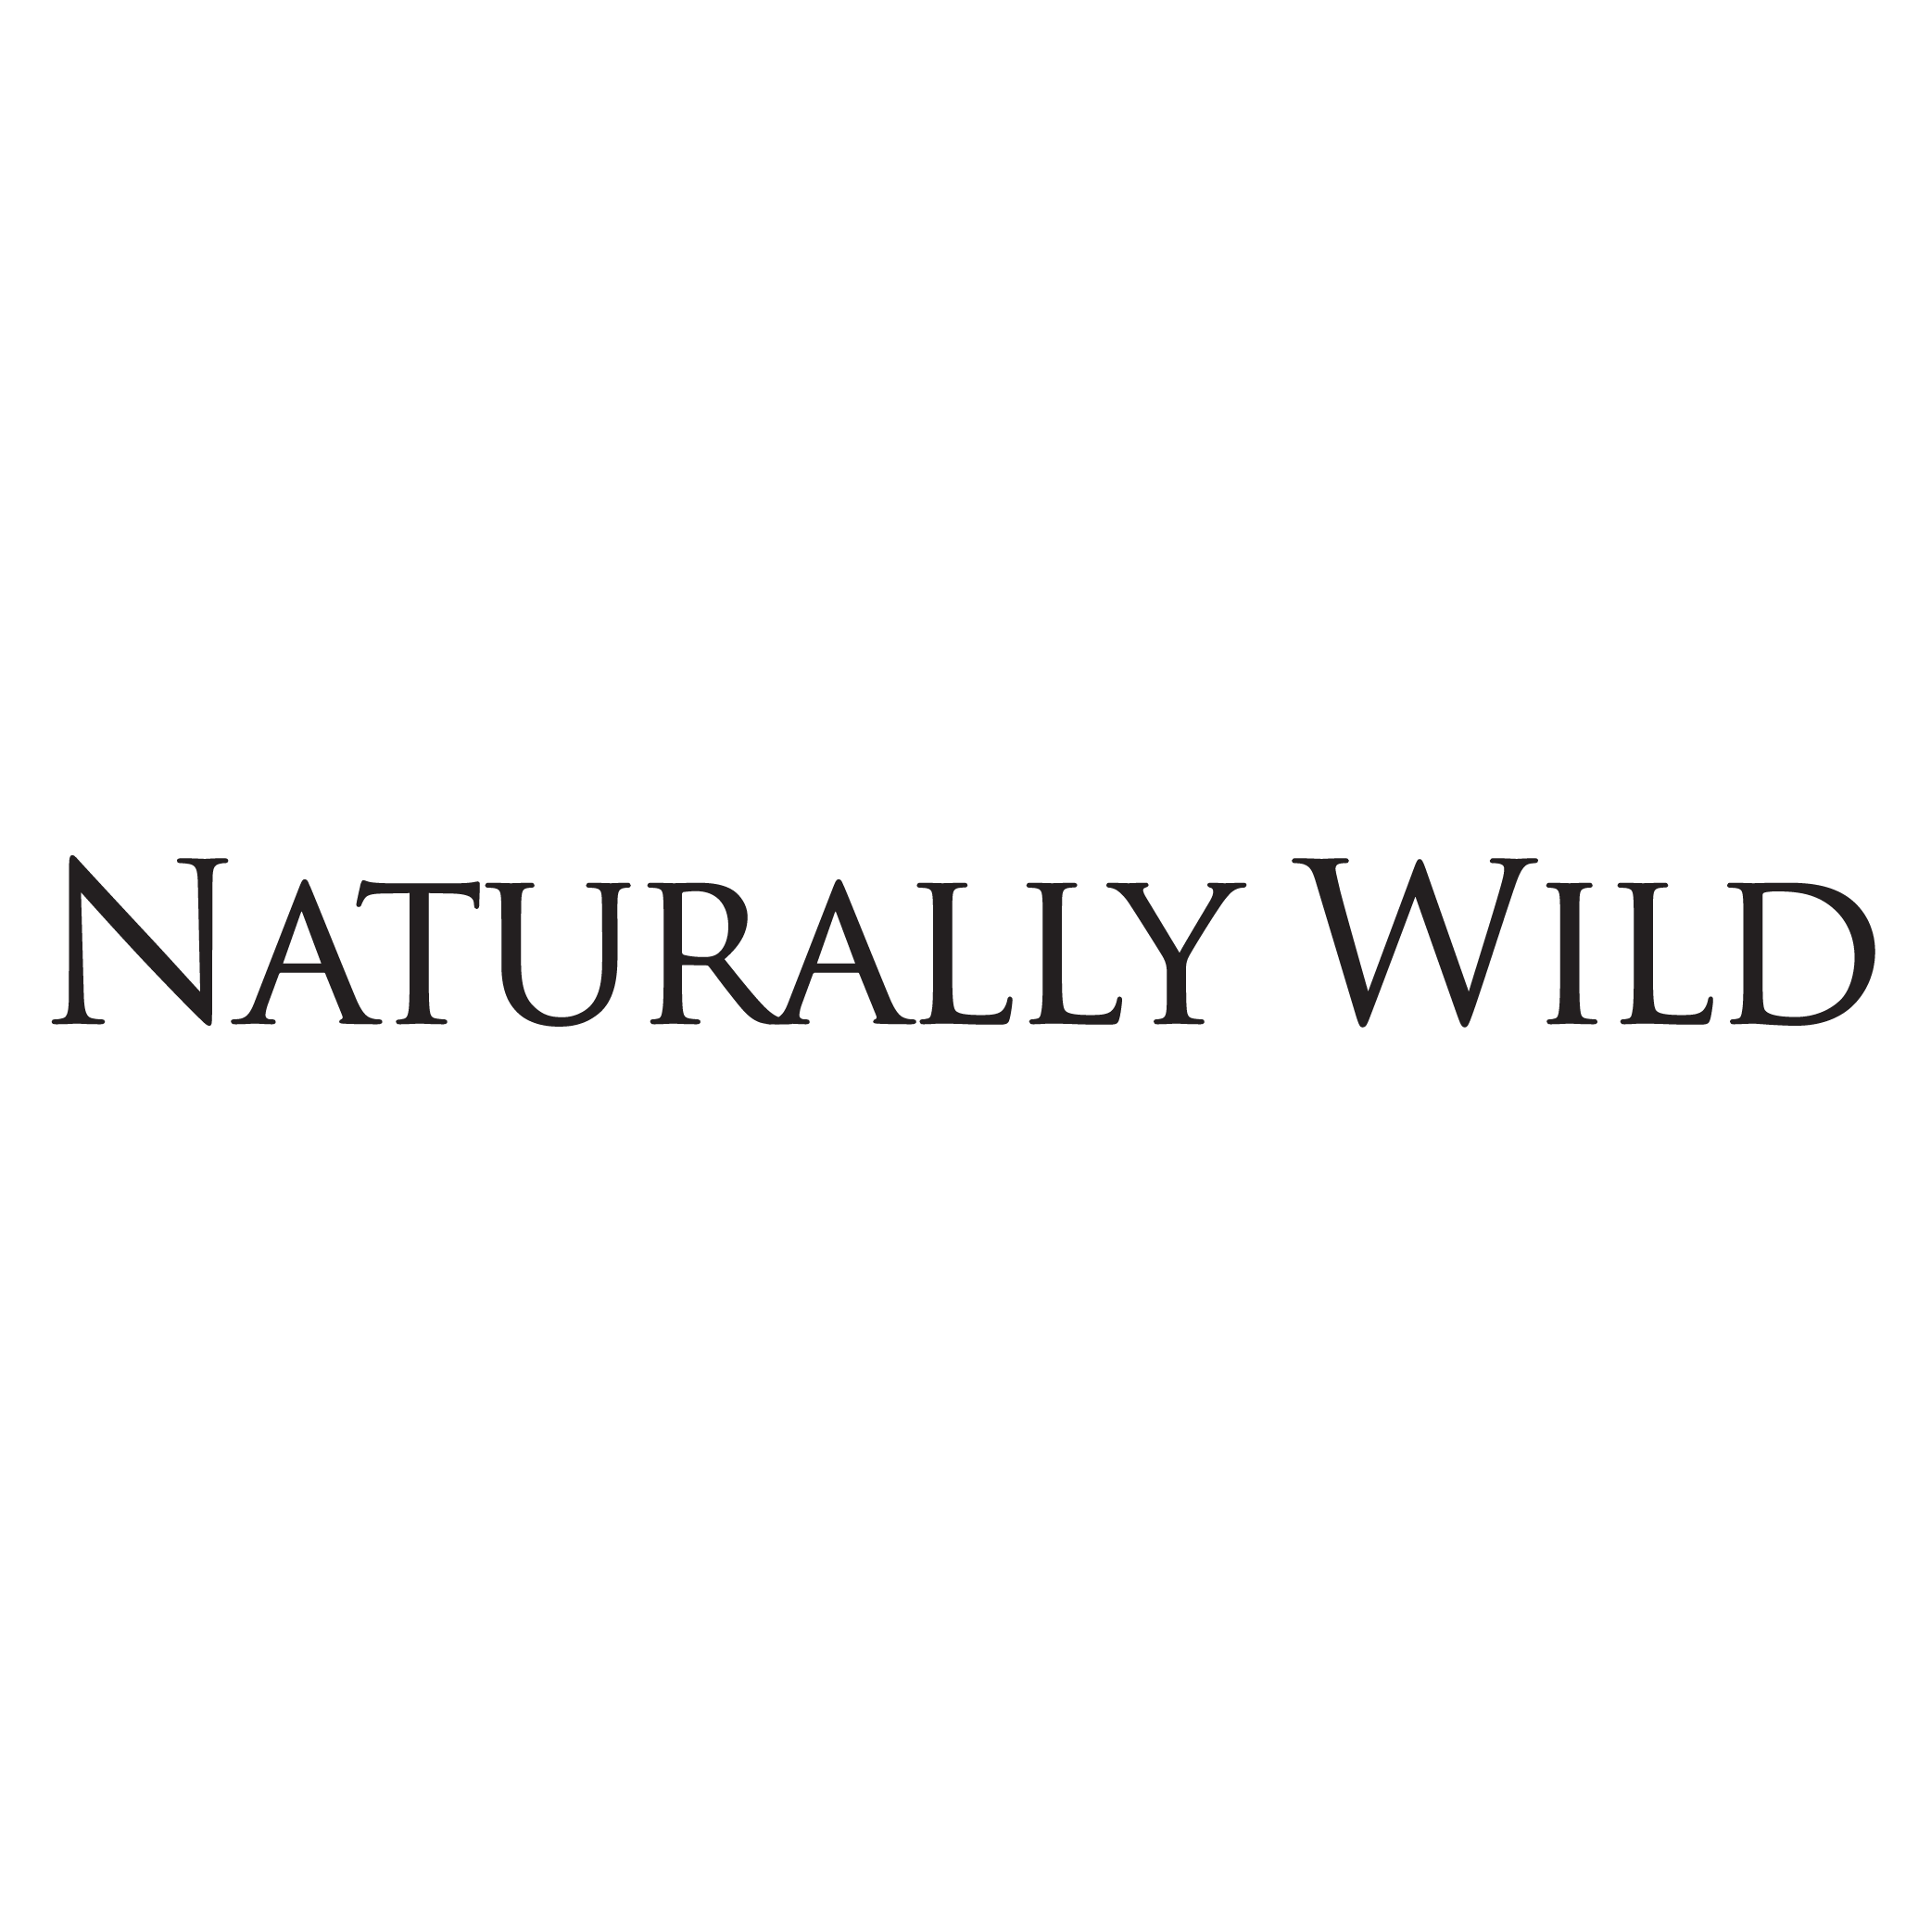 Naturally Wild